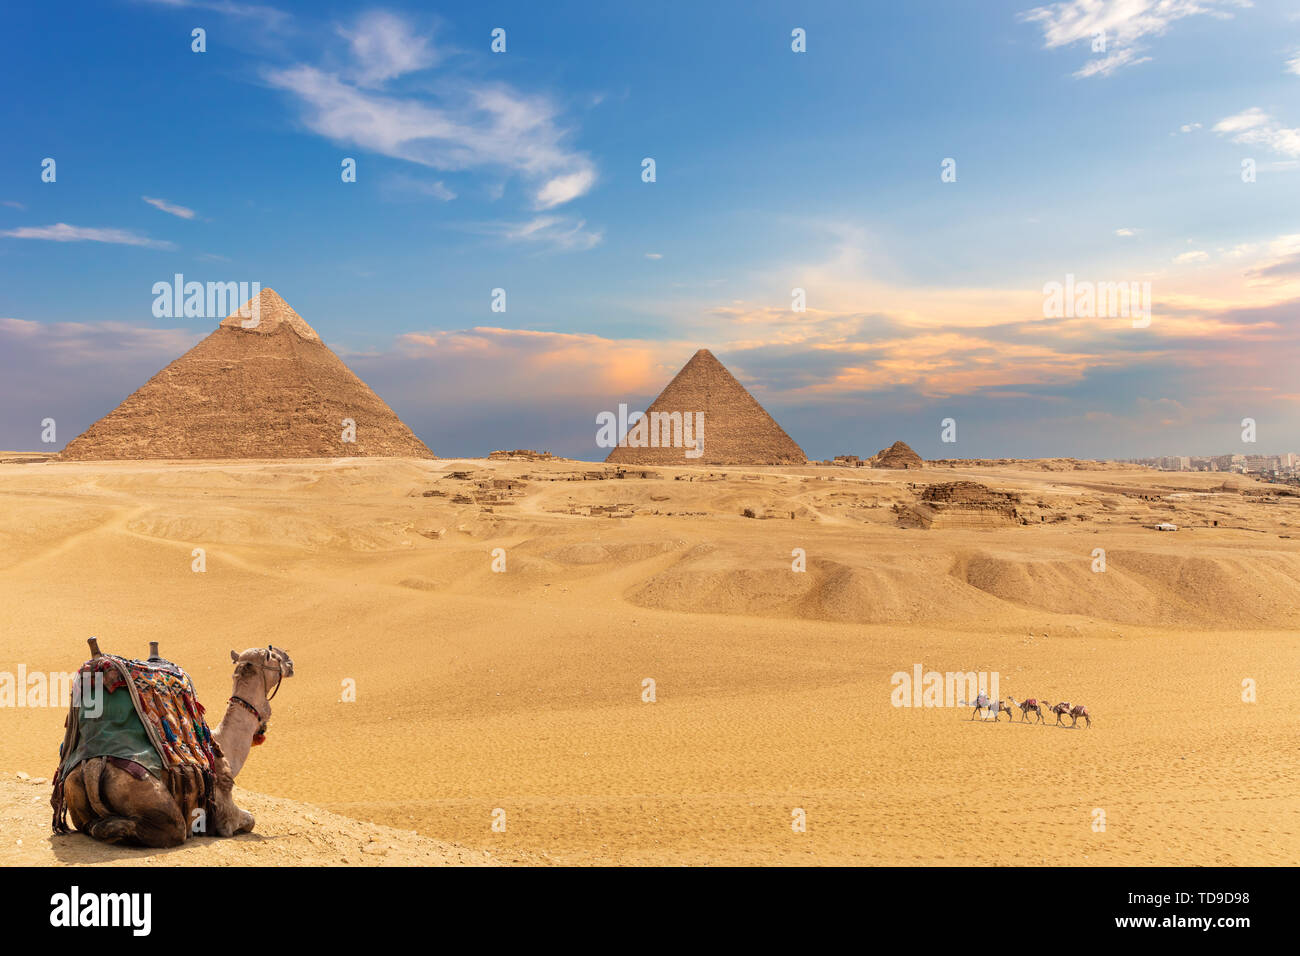 Las pirámides y camellos, hermosa vista del desierto de Giza. Foto de stock